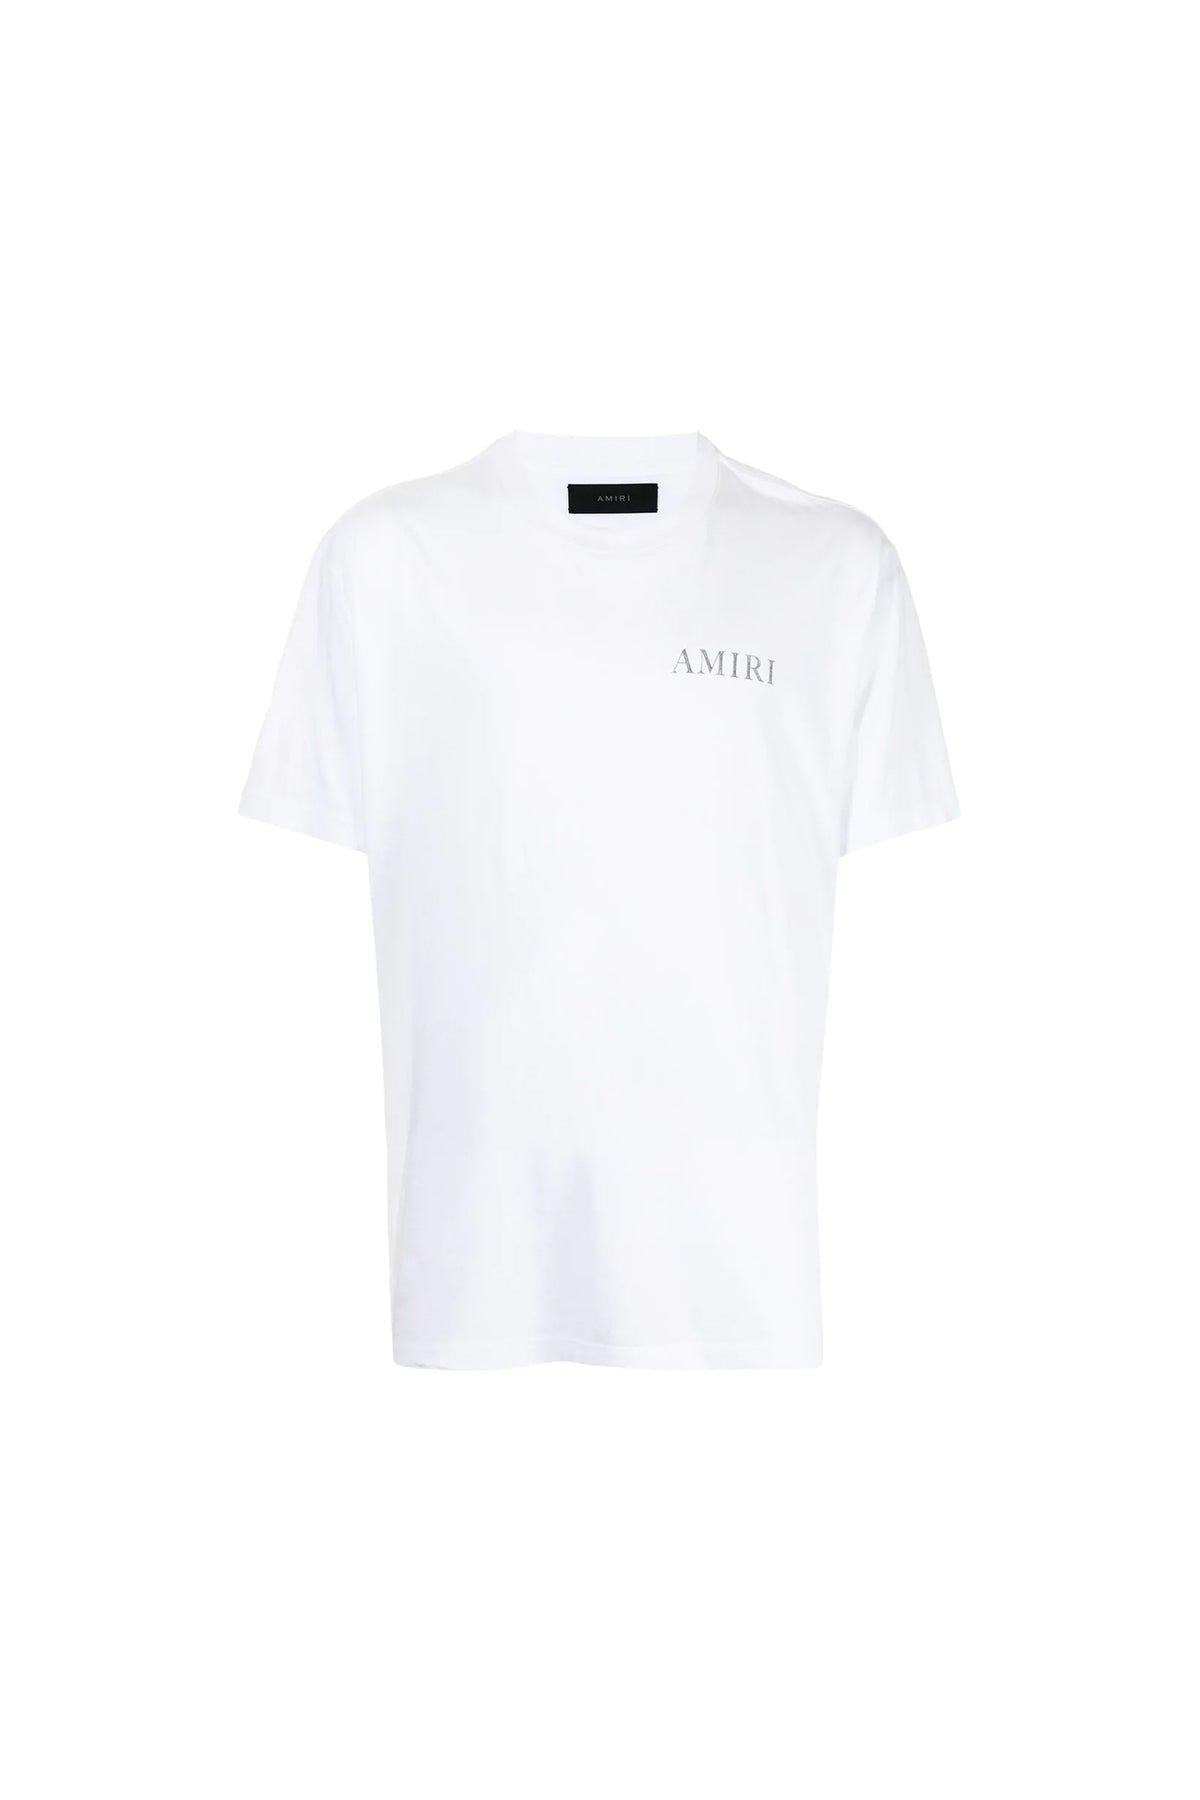 AMIRI graphic-print T-shirt White